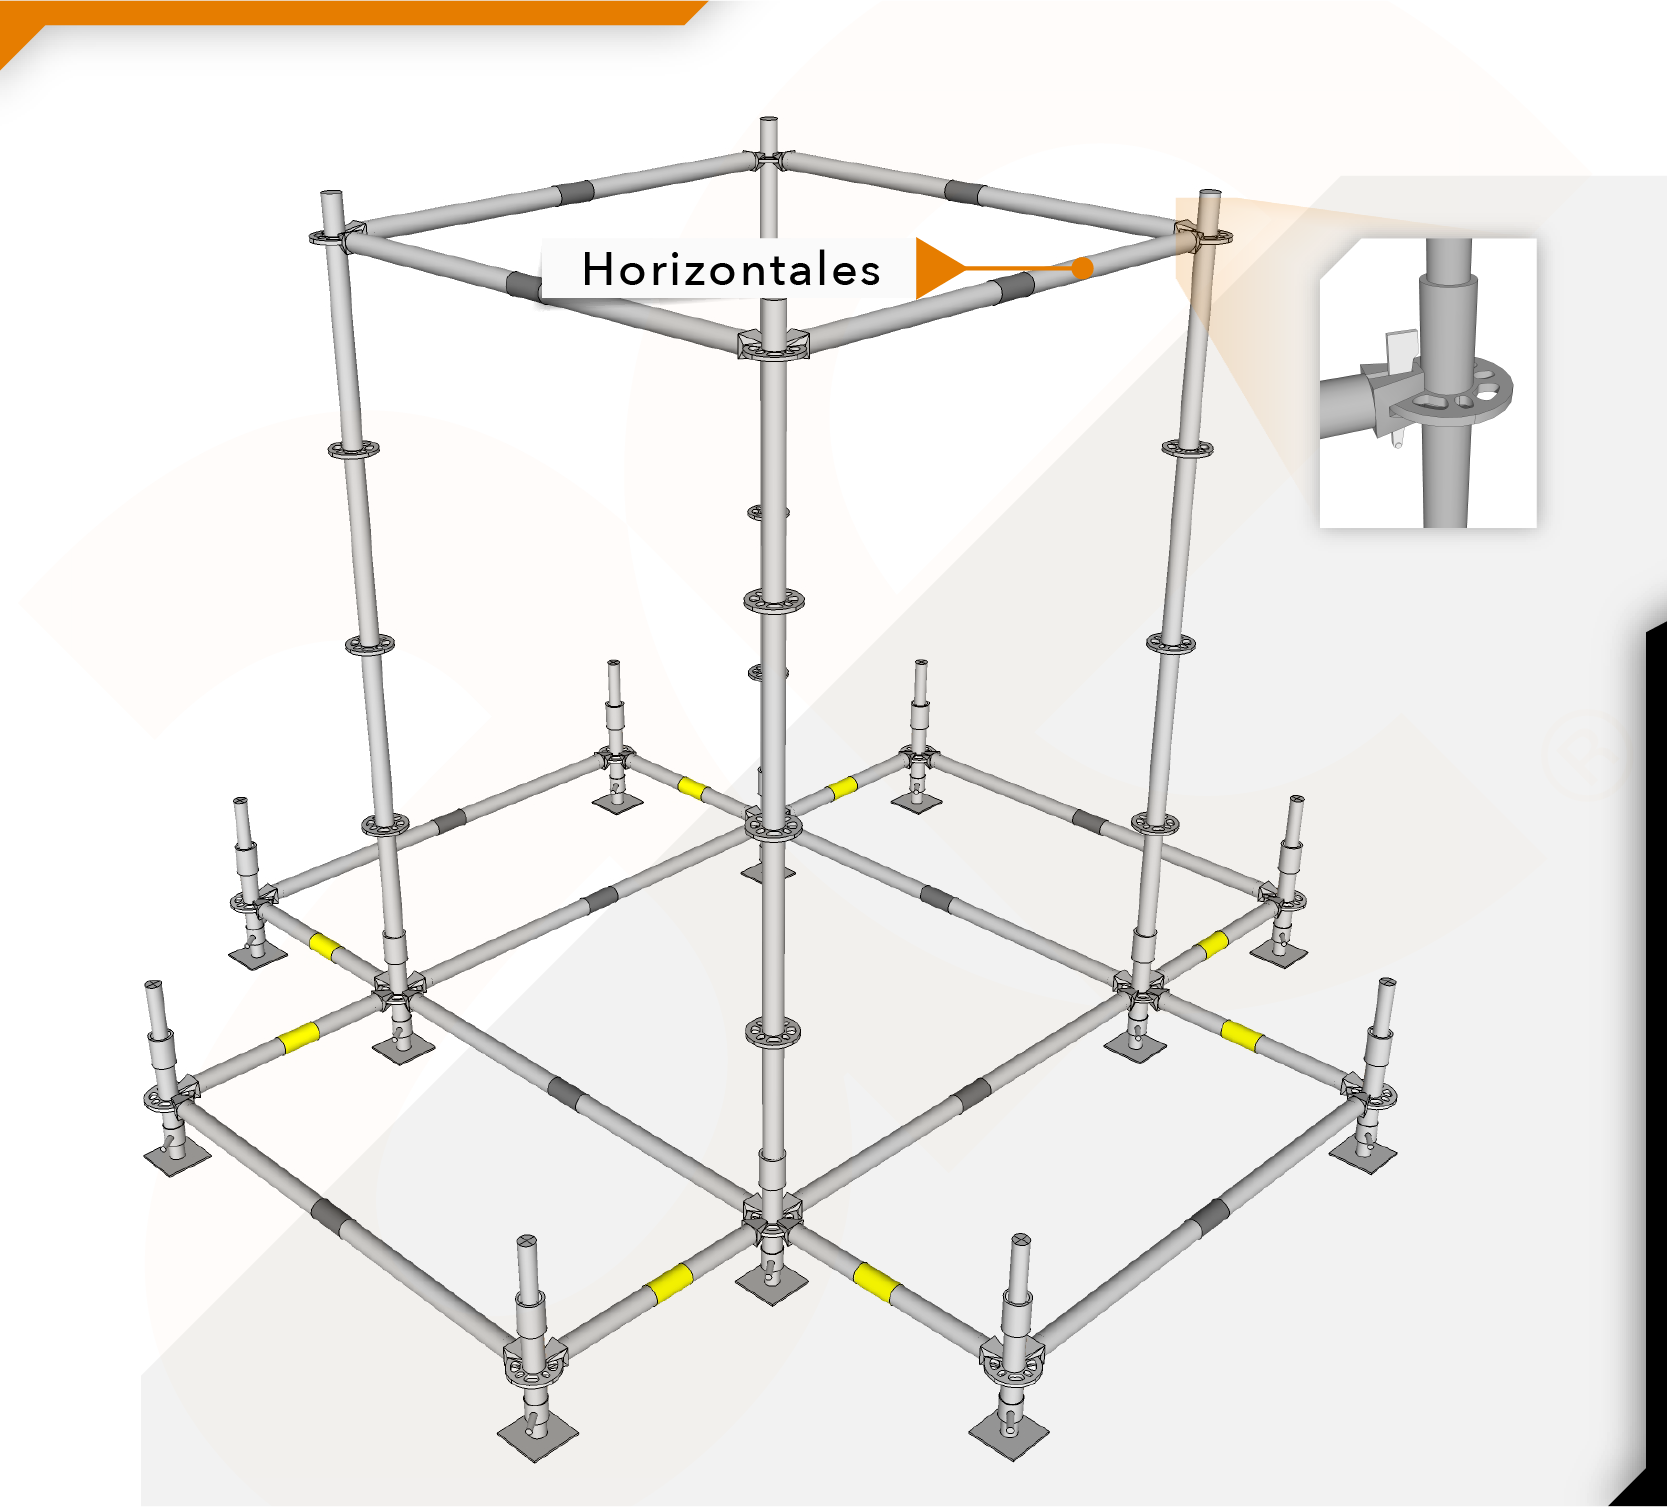 Instalación de horizontales en un andamio multidireccional